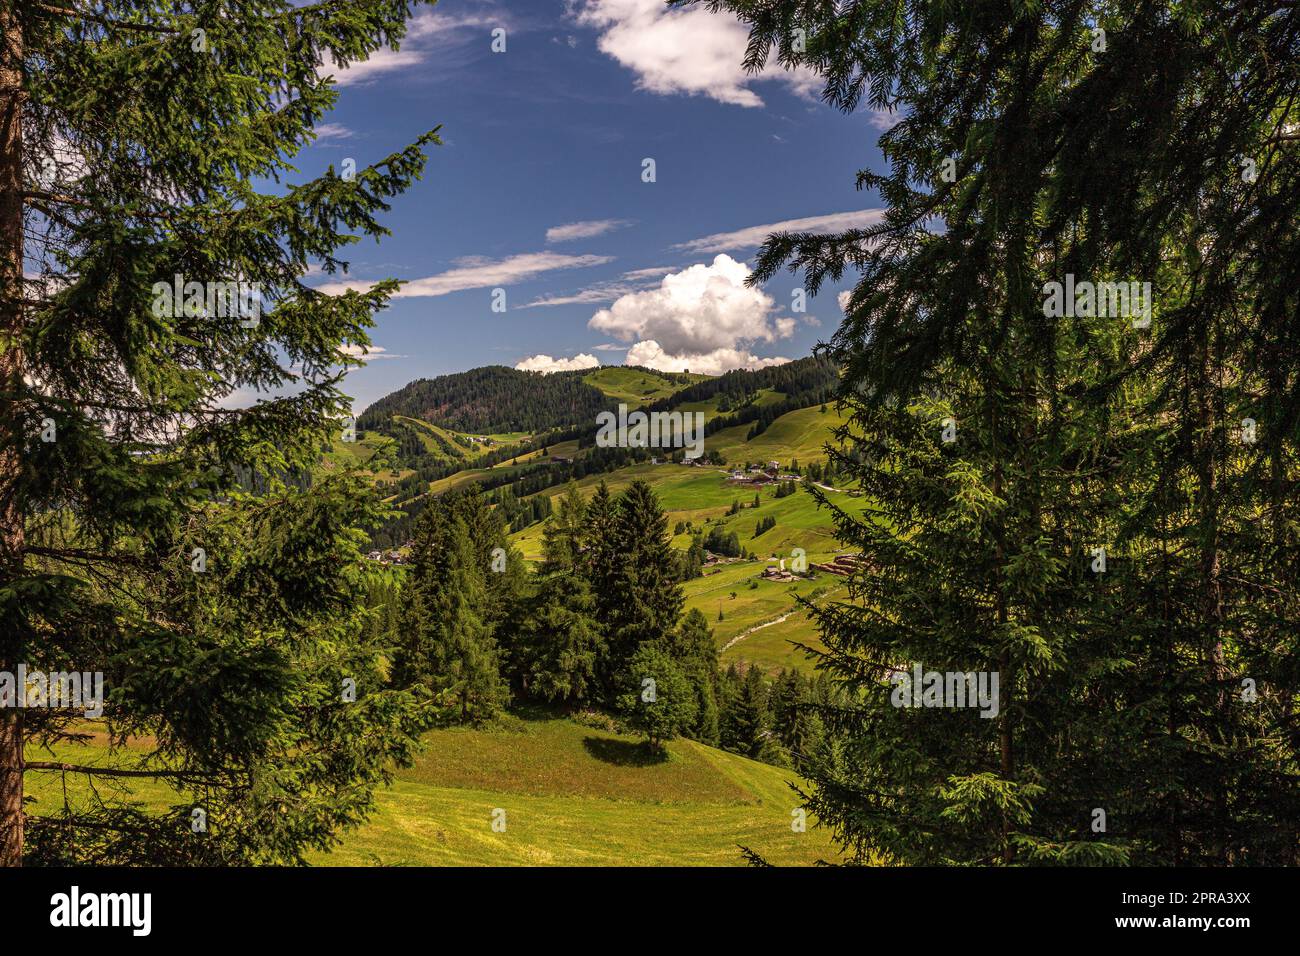 Dolomiti Alps in Alta Badia landscape view Stock Photo